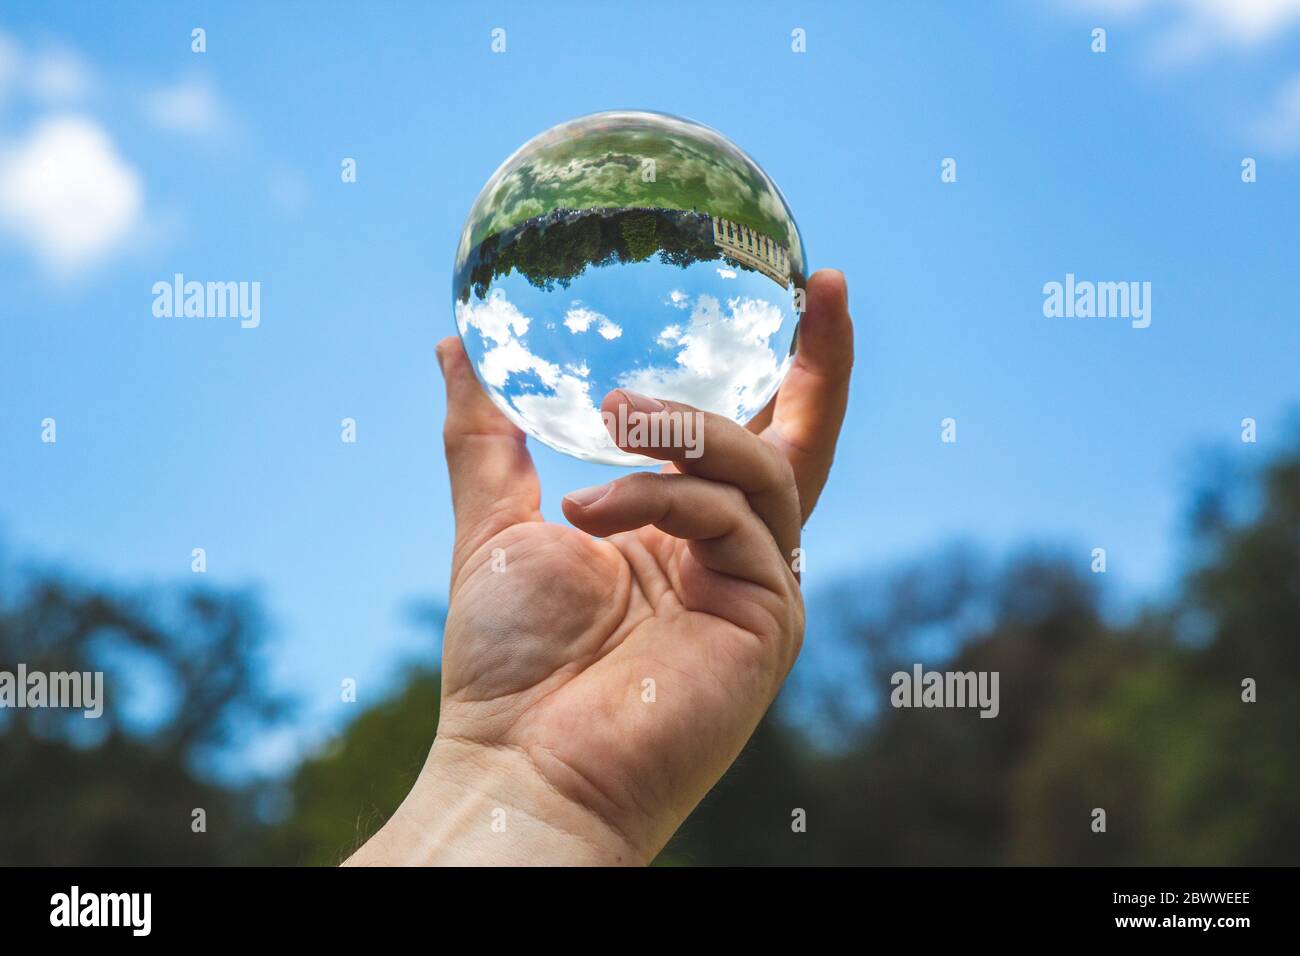 Un hermoso paisaje con árboles y nubes en una bola de cristal transparente Foto de stock